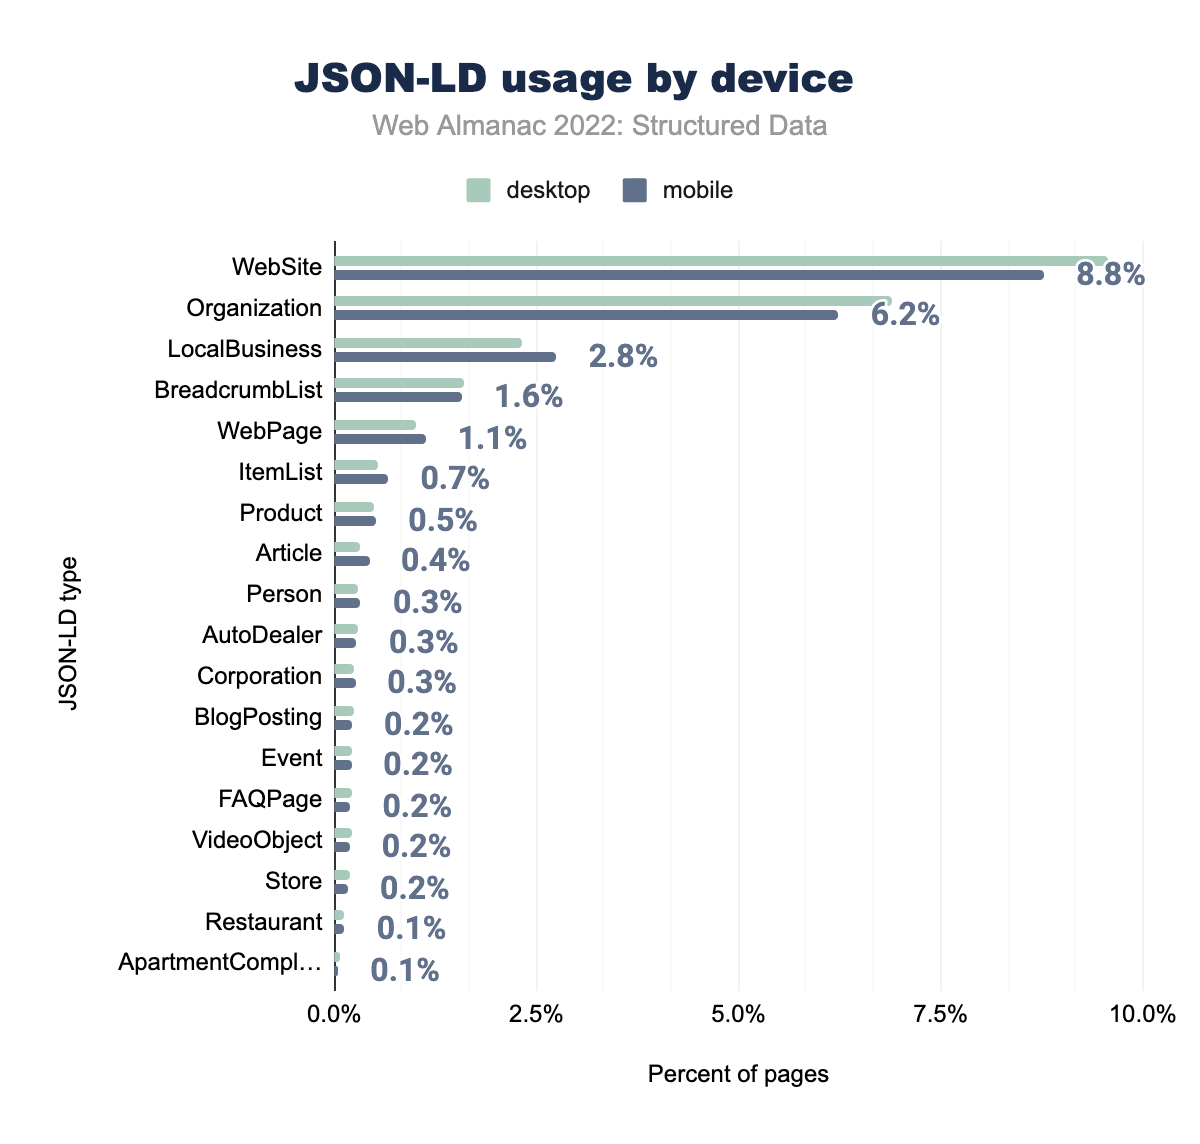 Utilizzo di JSON-LD per dispositivo